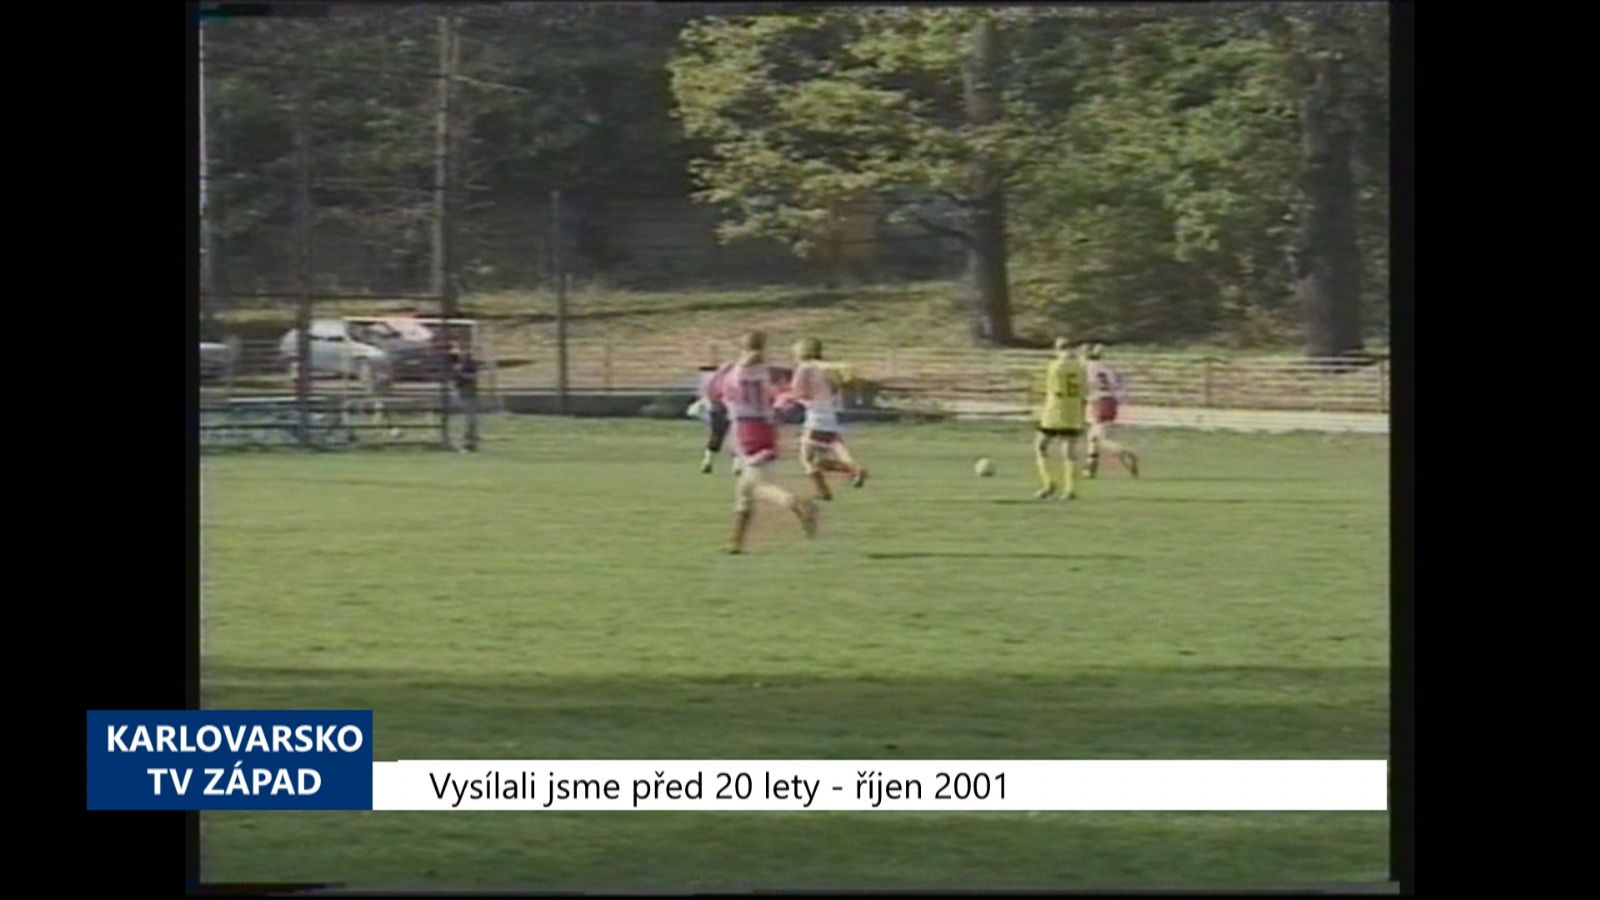 2001 – Cheb: Domácí fotbalistky porazily FK Vroutek 3:1 (TV Západ)